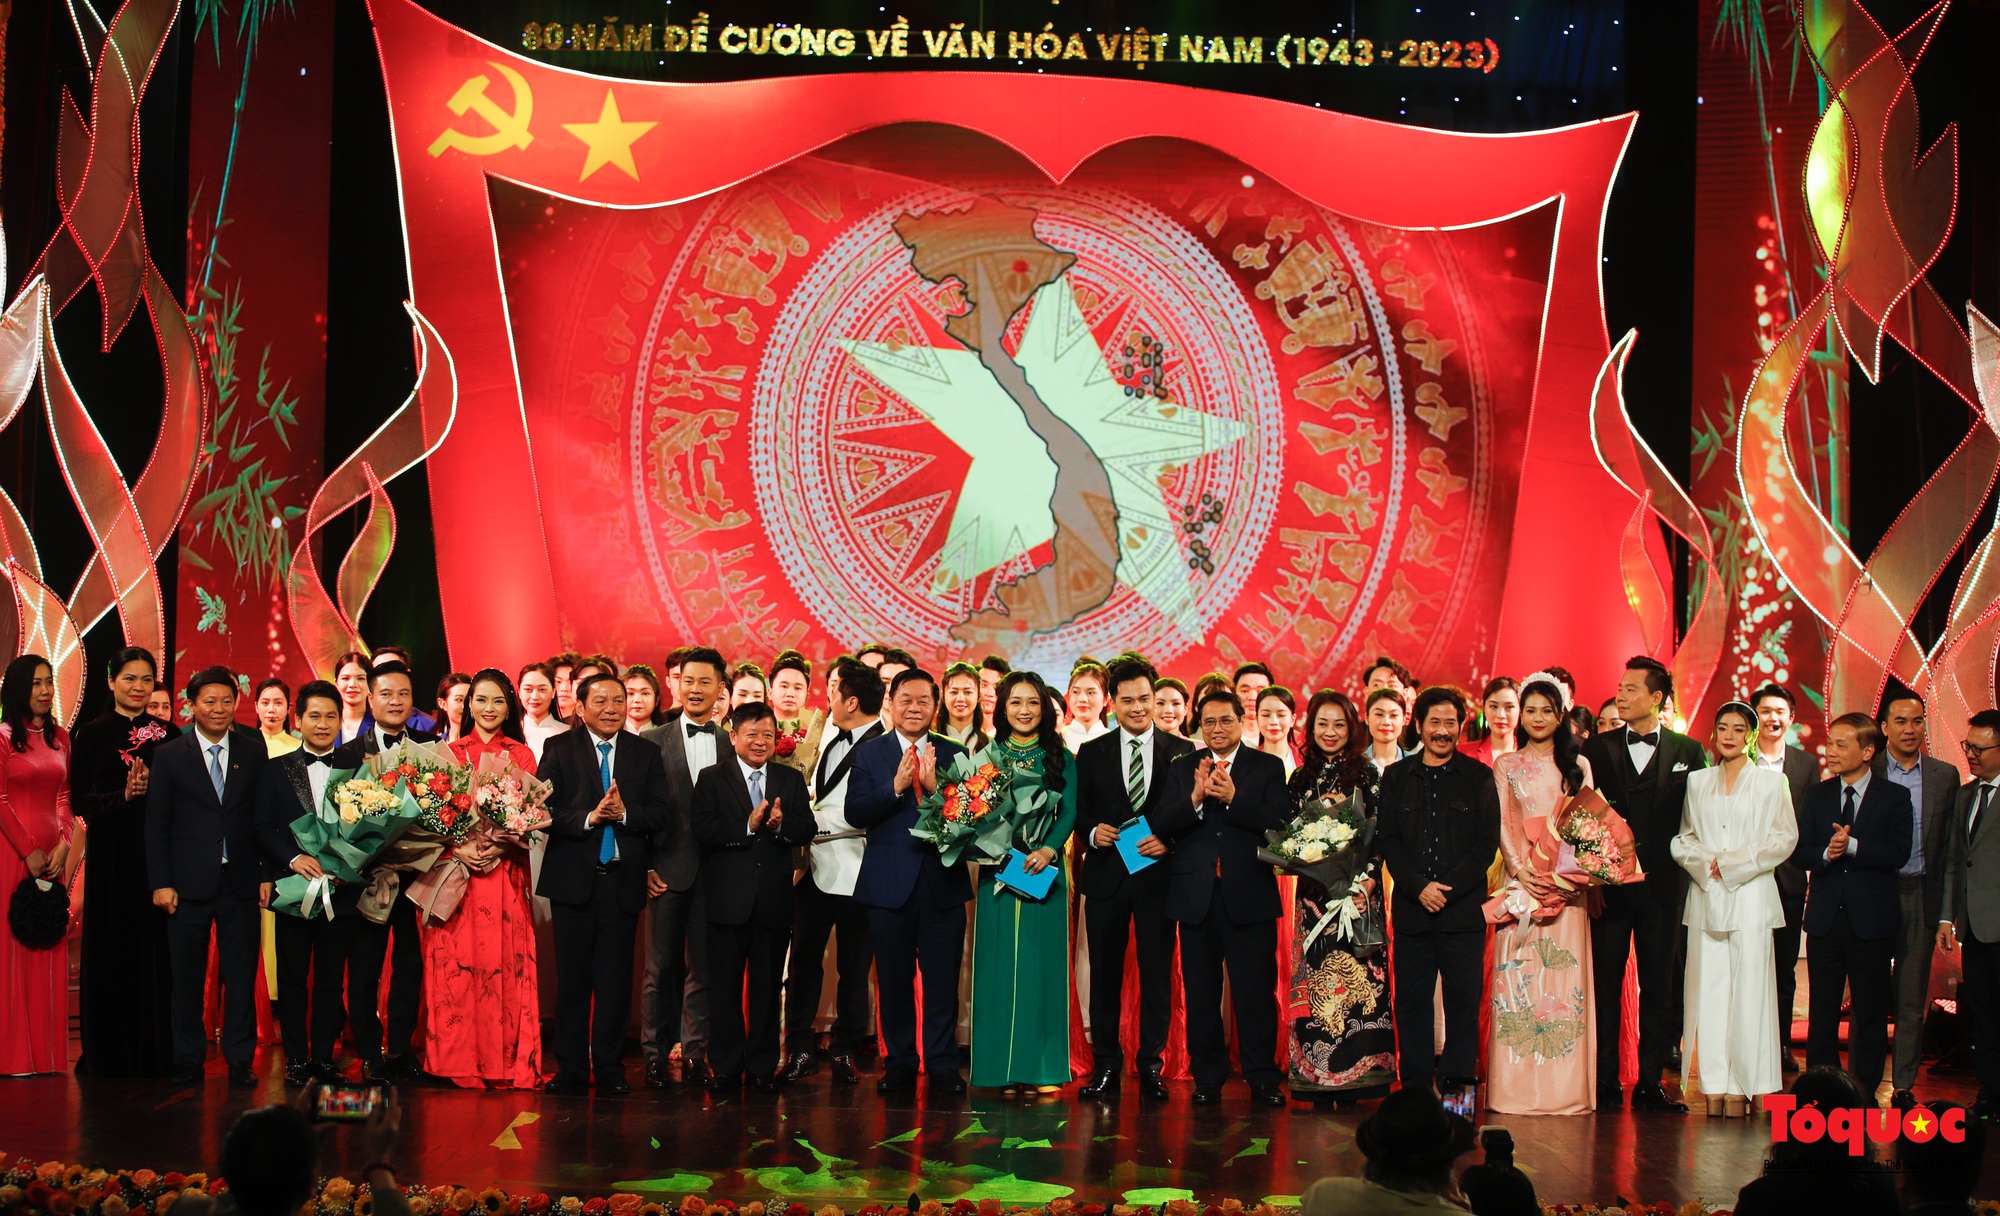 Chùm ảnh: Lễ kỷ niệm và chương trình nghệ thuật đặc biệt kỷ niệm 80 năm ra đời Đề cương văn hóa Việt Nam - Ảnh 20.